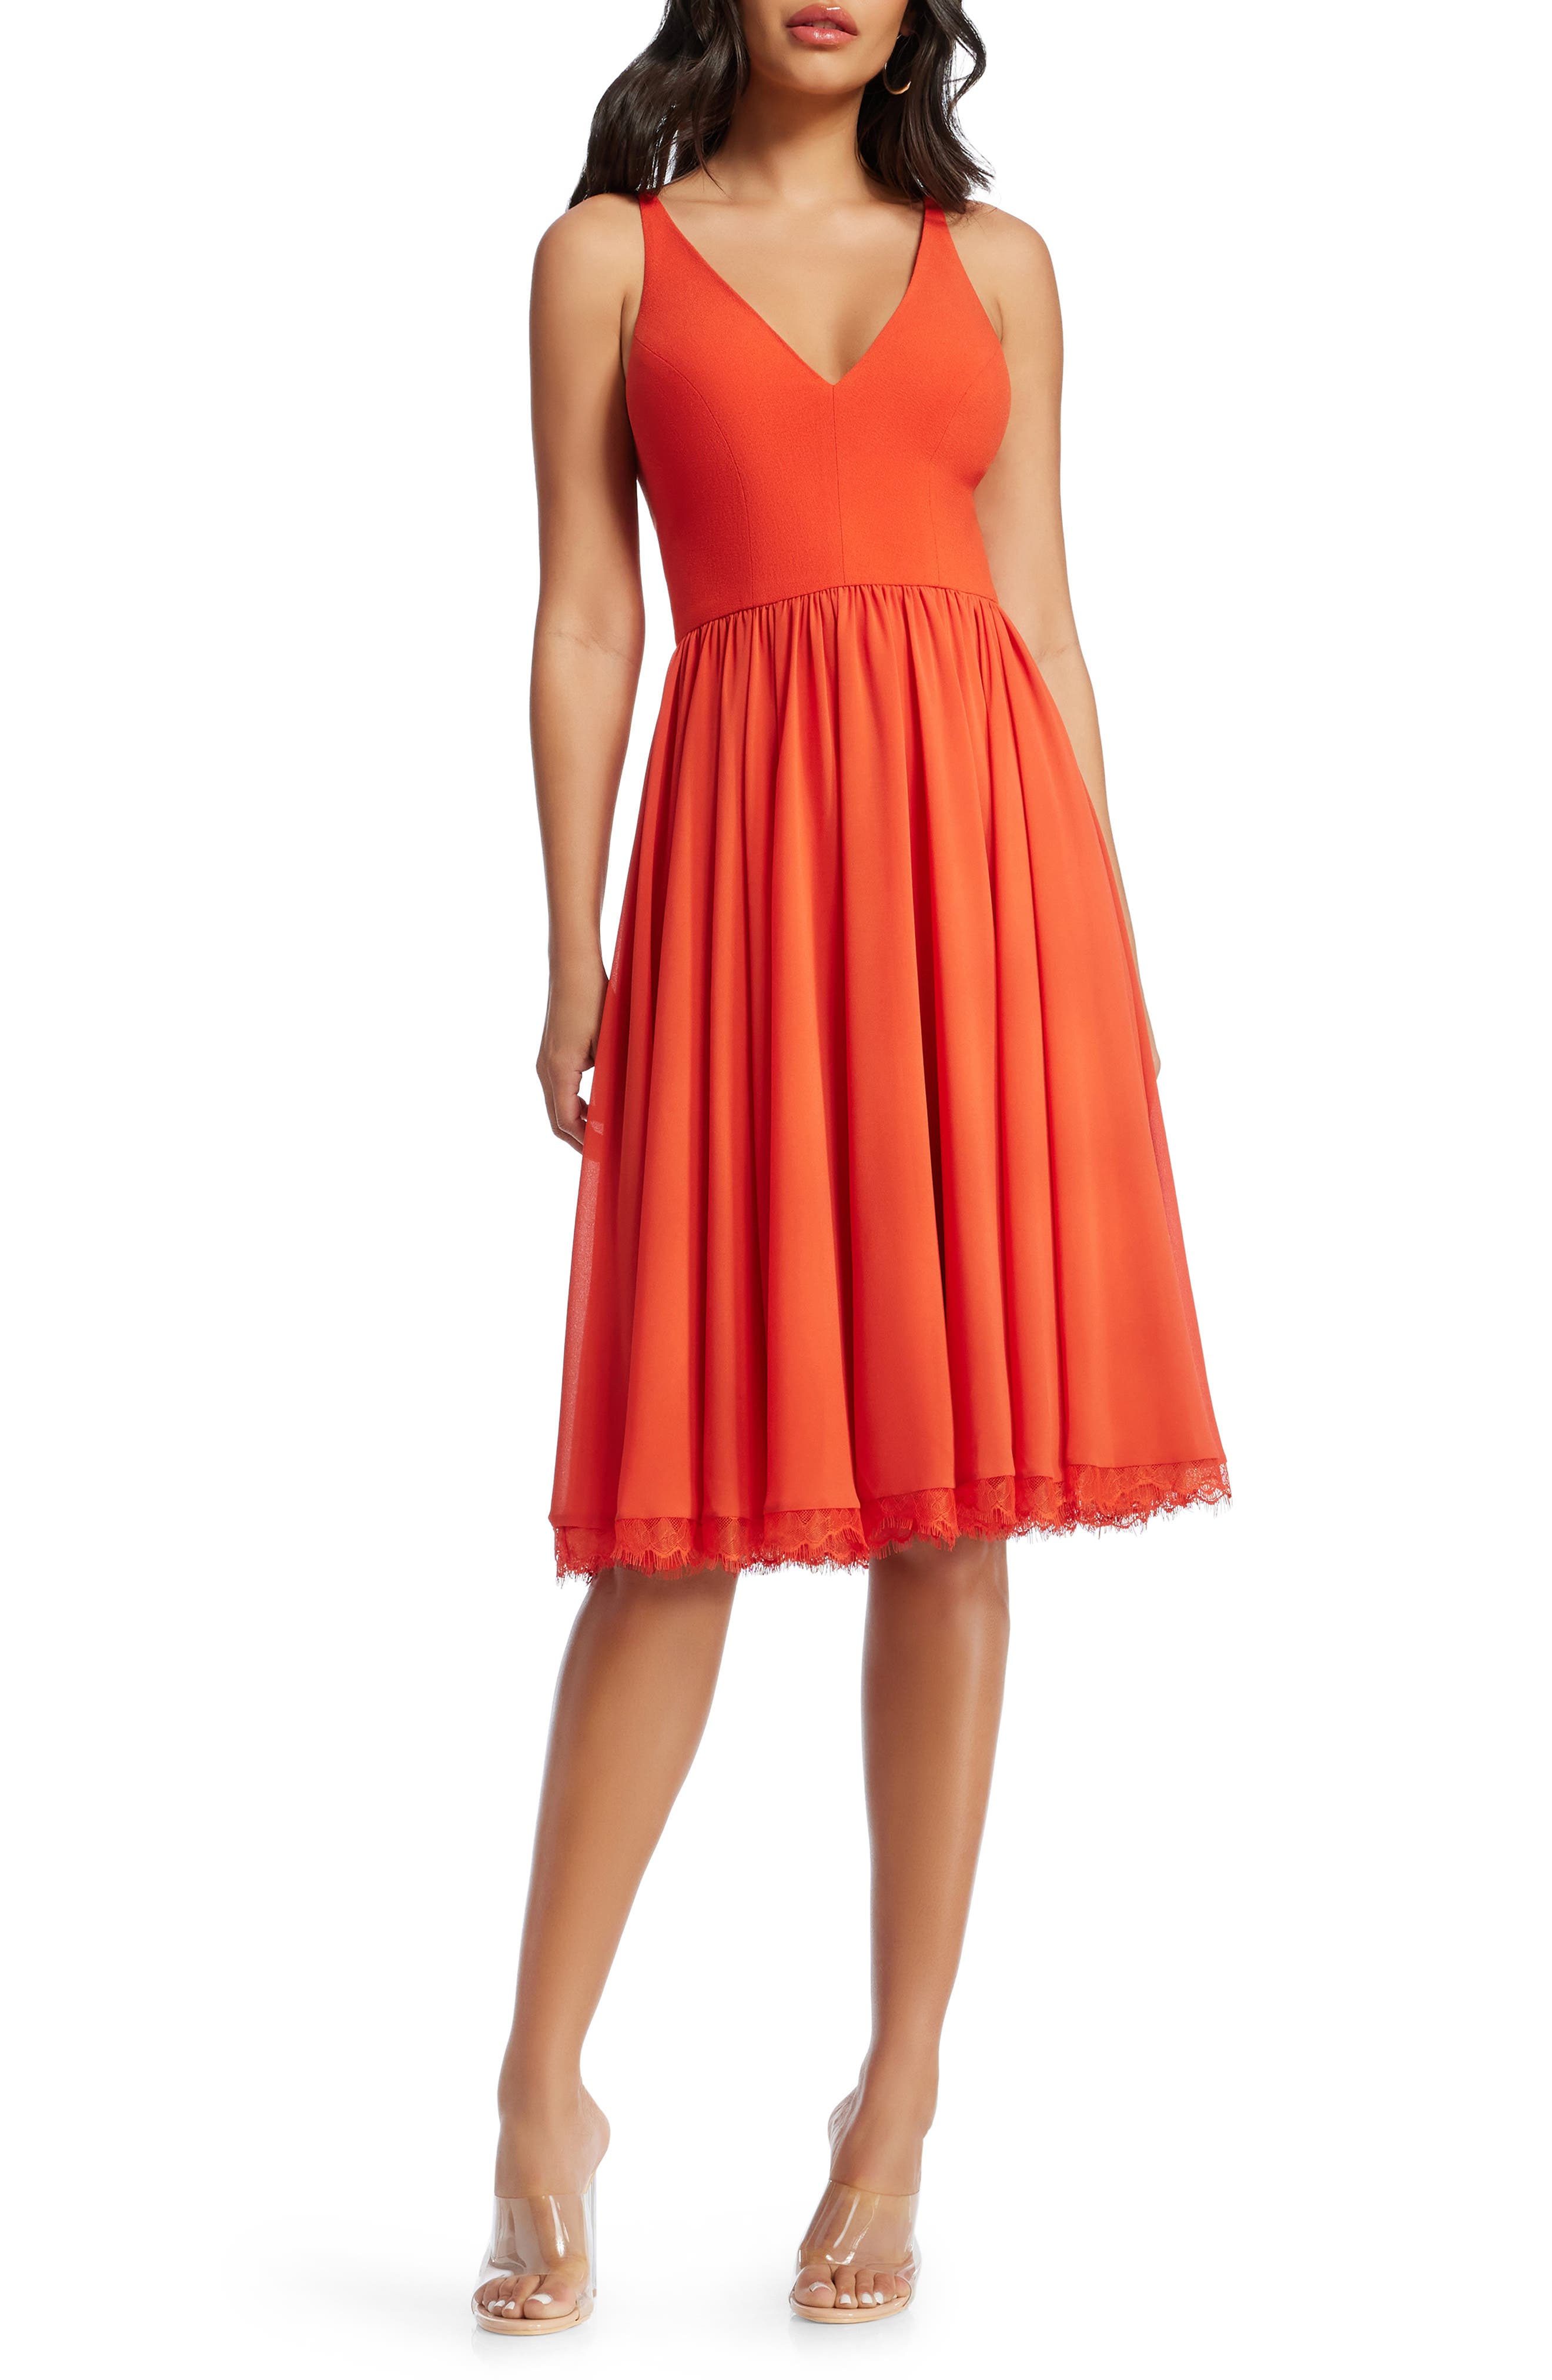 orange dress for women